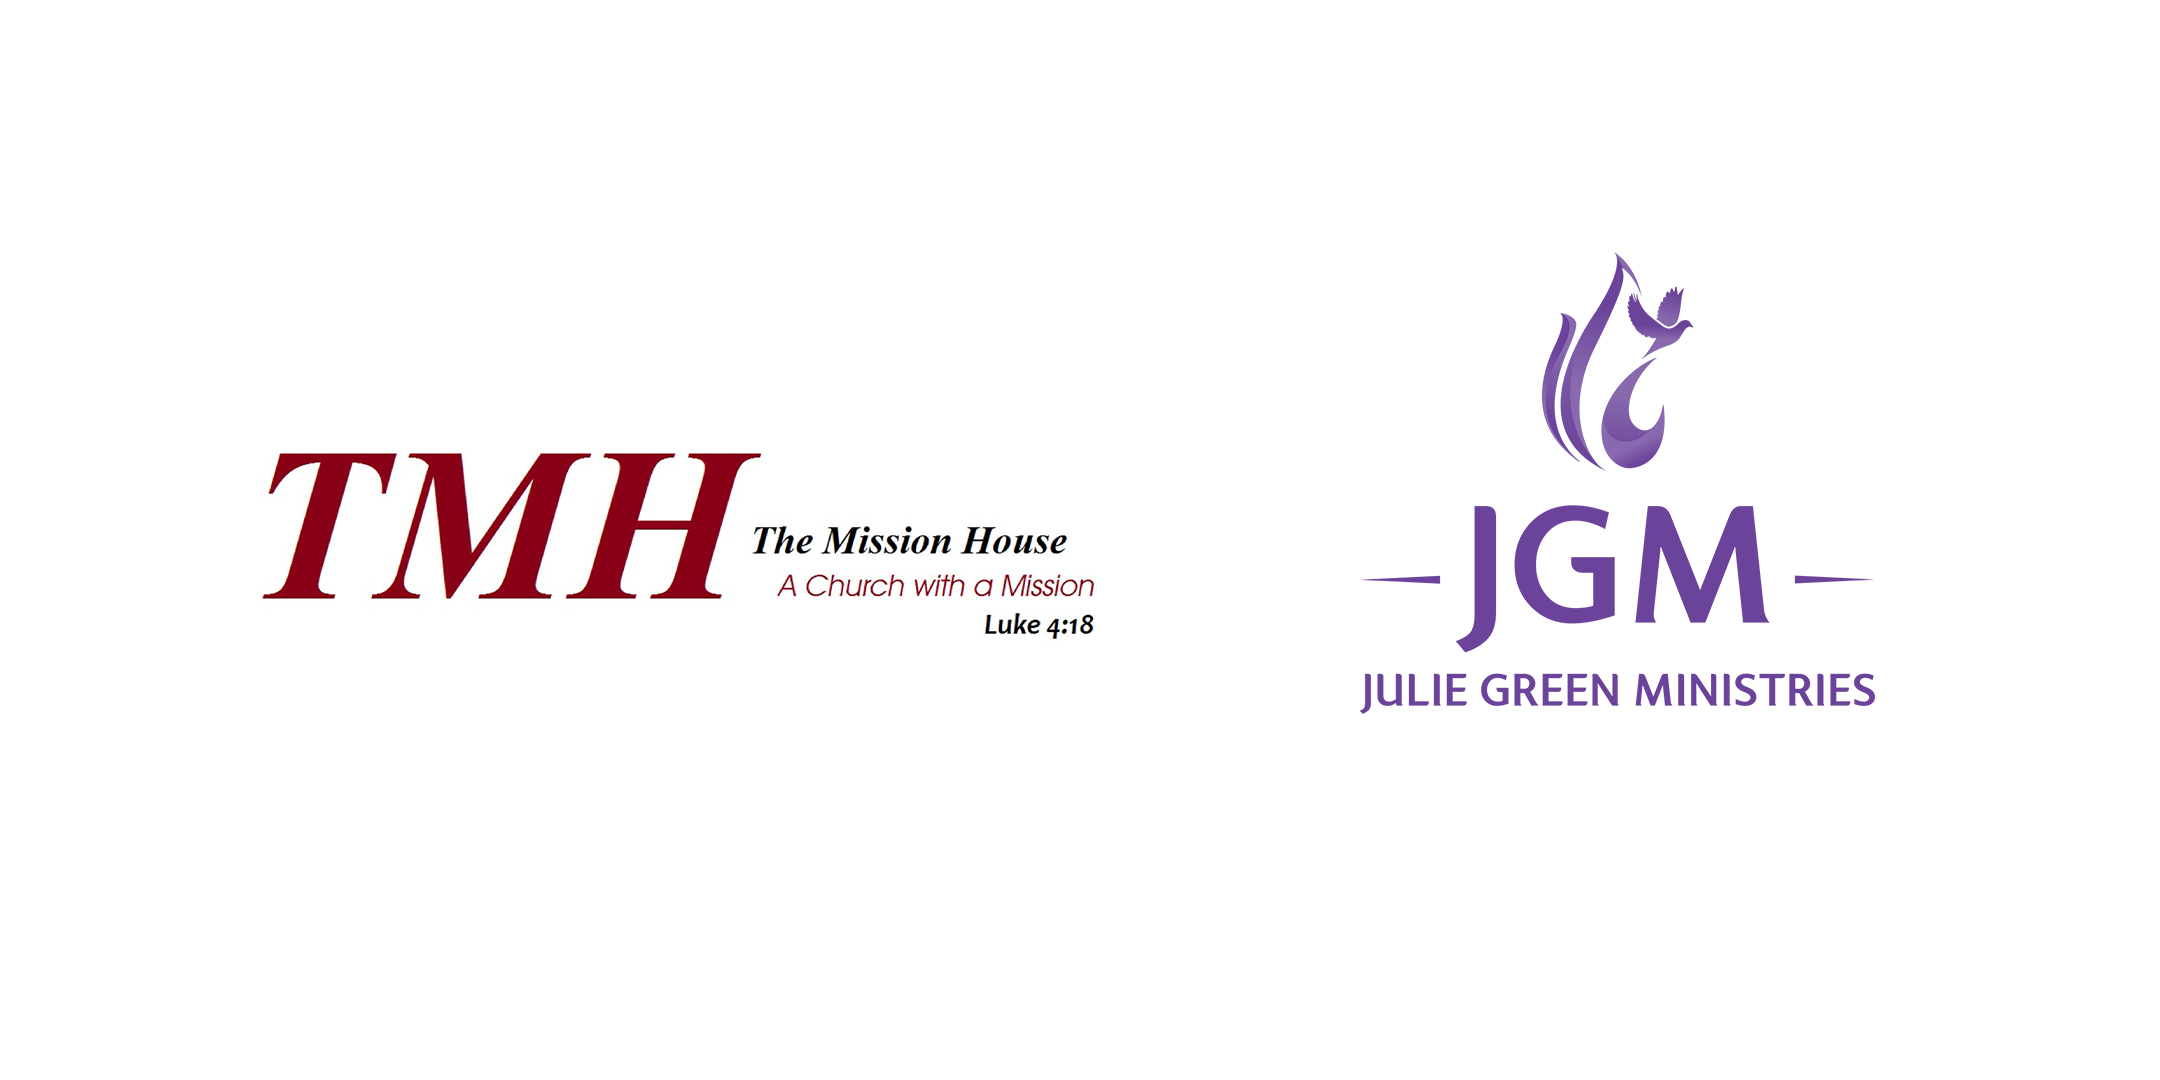 MHMJGM event logo_v3.png